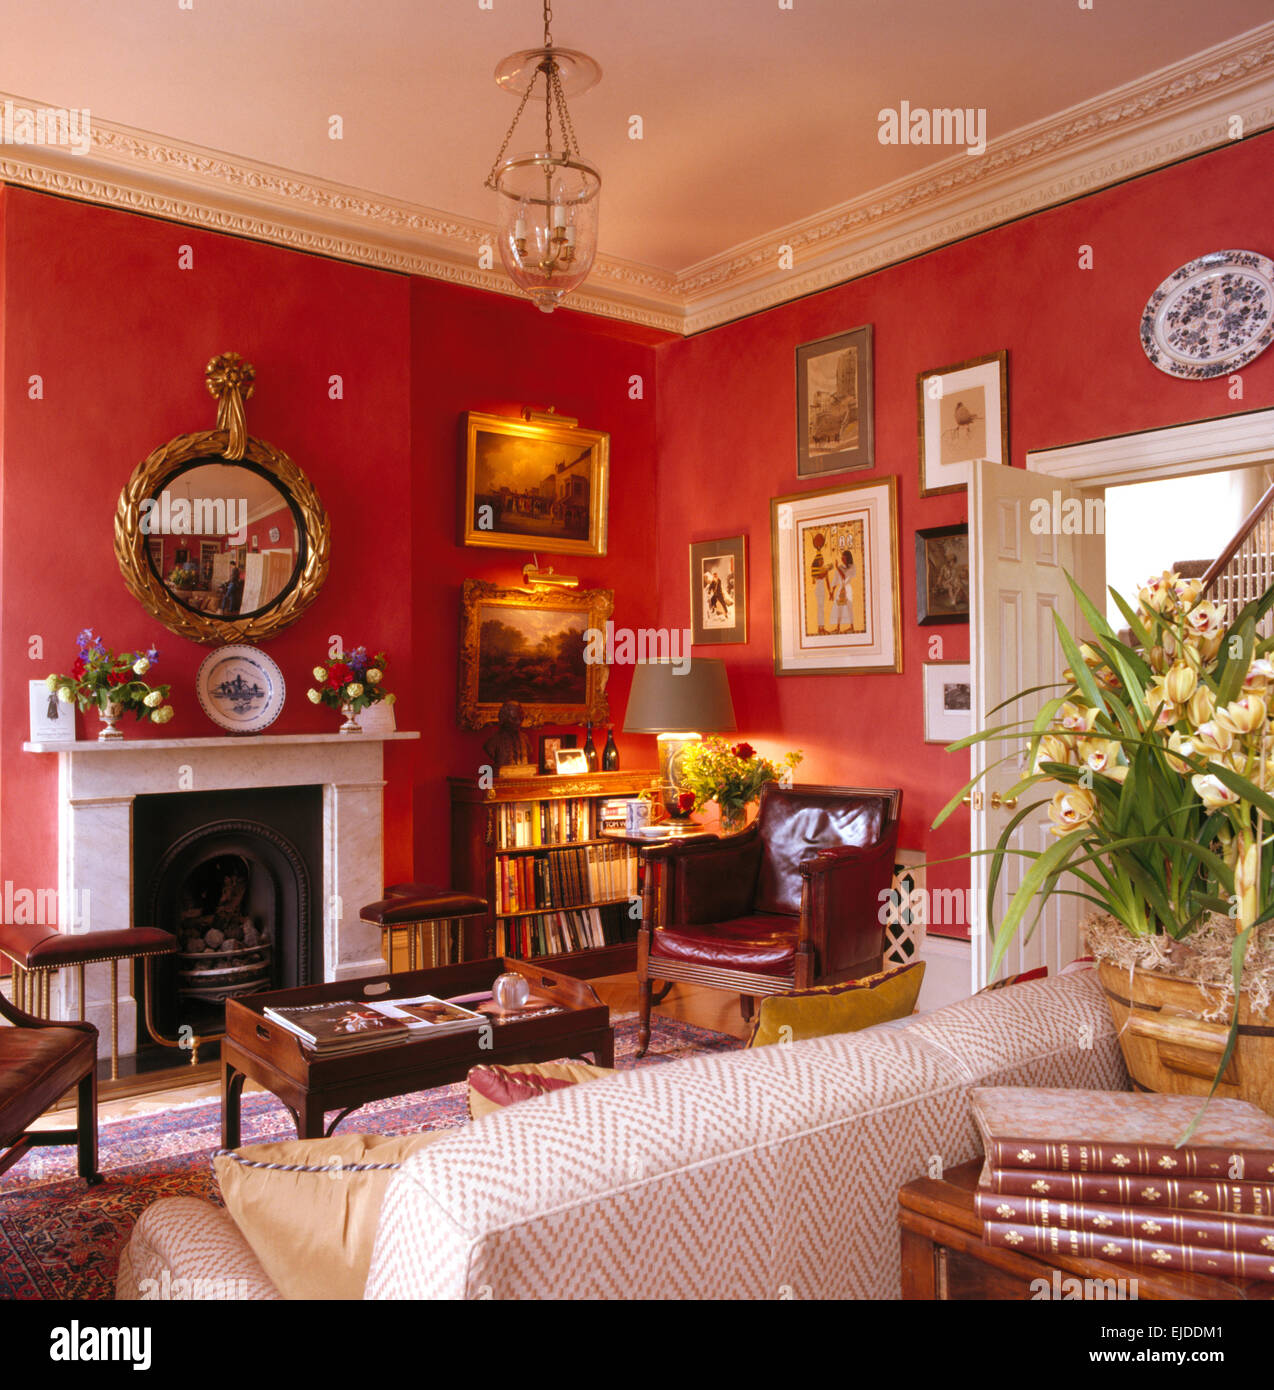 Raccolta di immagini su pareti di rosso degli anni novanta la stanza di seduta con specchio dorato sopra caminetto in marmo Foto Stock